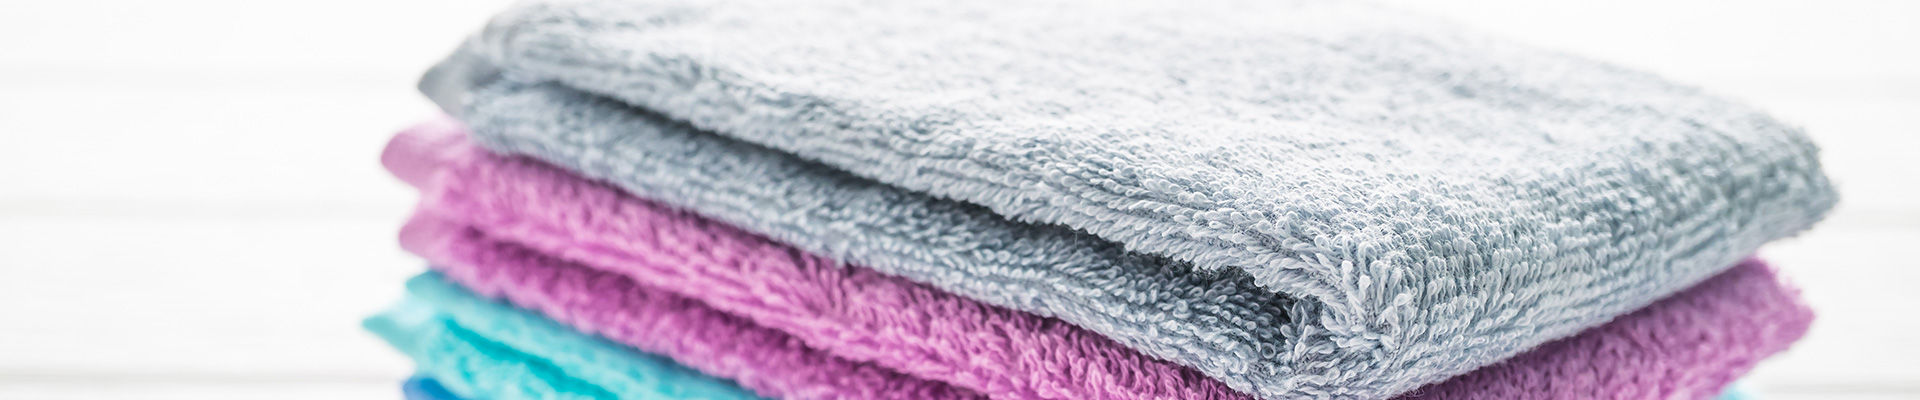 towels-banner-1.jpg